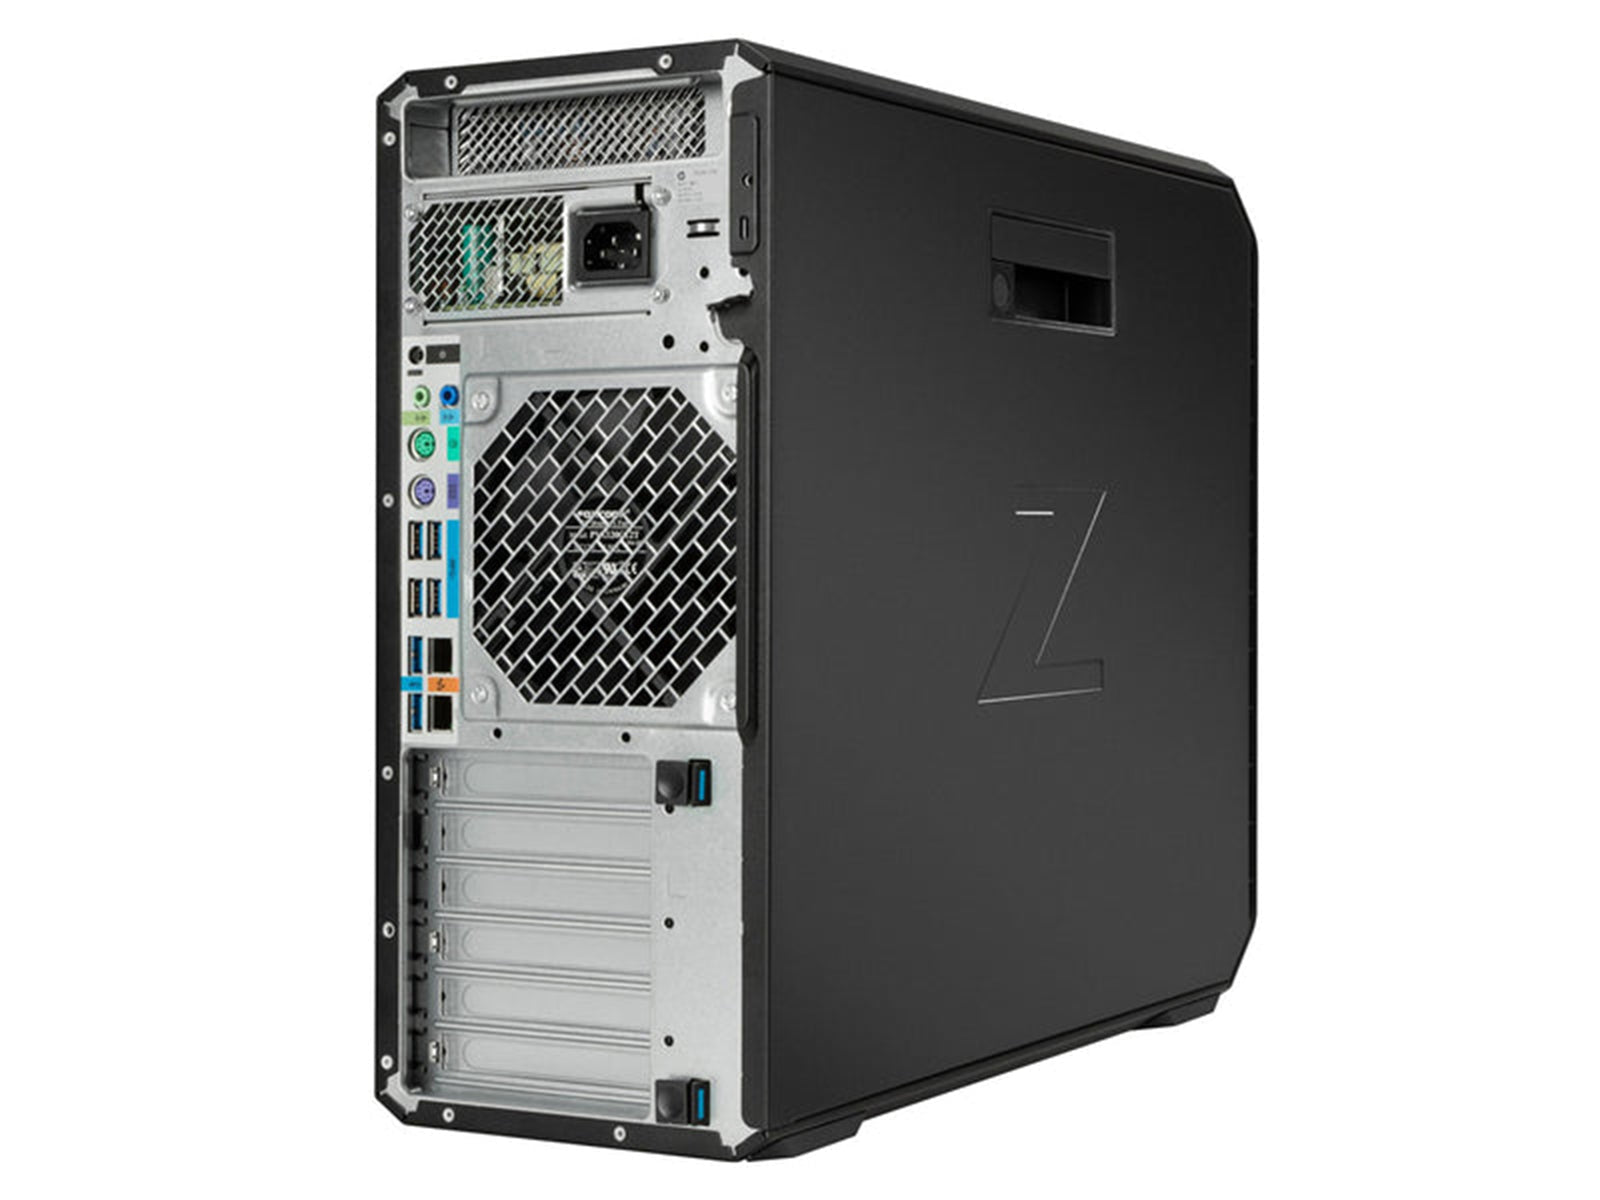 Estación de trabajo HP Z4 G4 | Intel Xeon W-2245 | 128 GB DDR4 | SSD NVMe de 1TB | MXRT-8700 | Win10 Pro